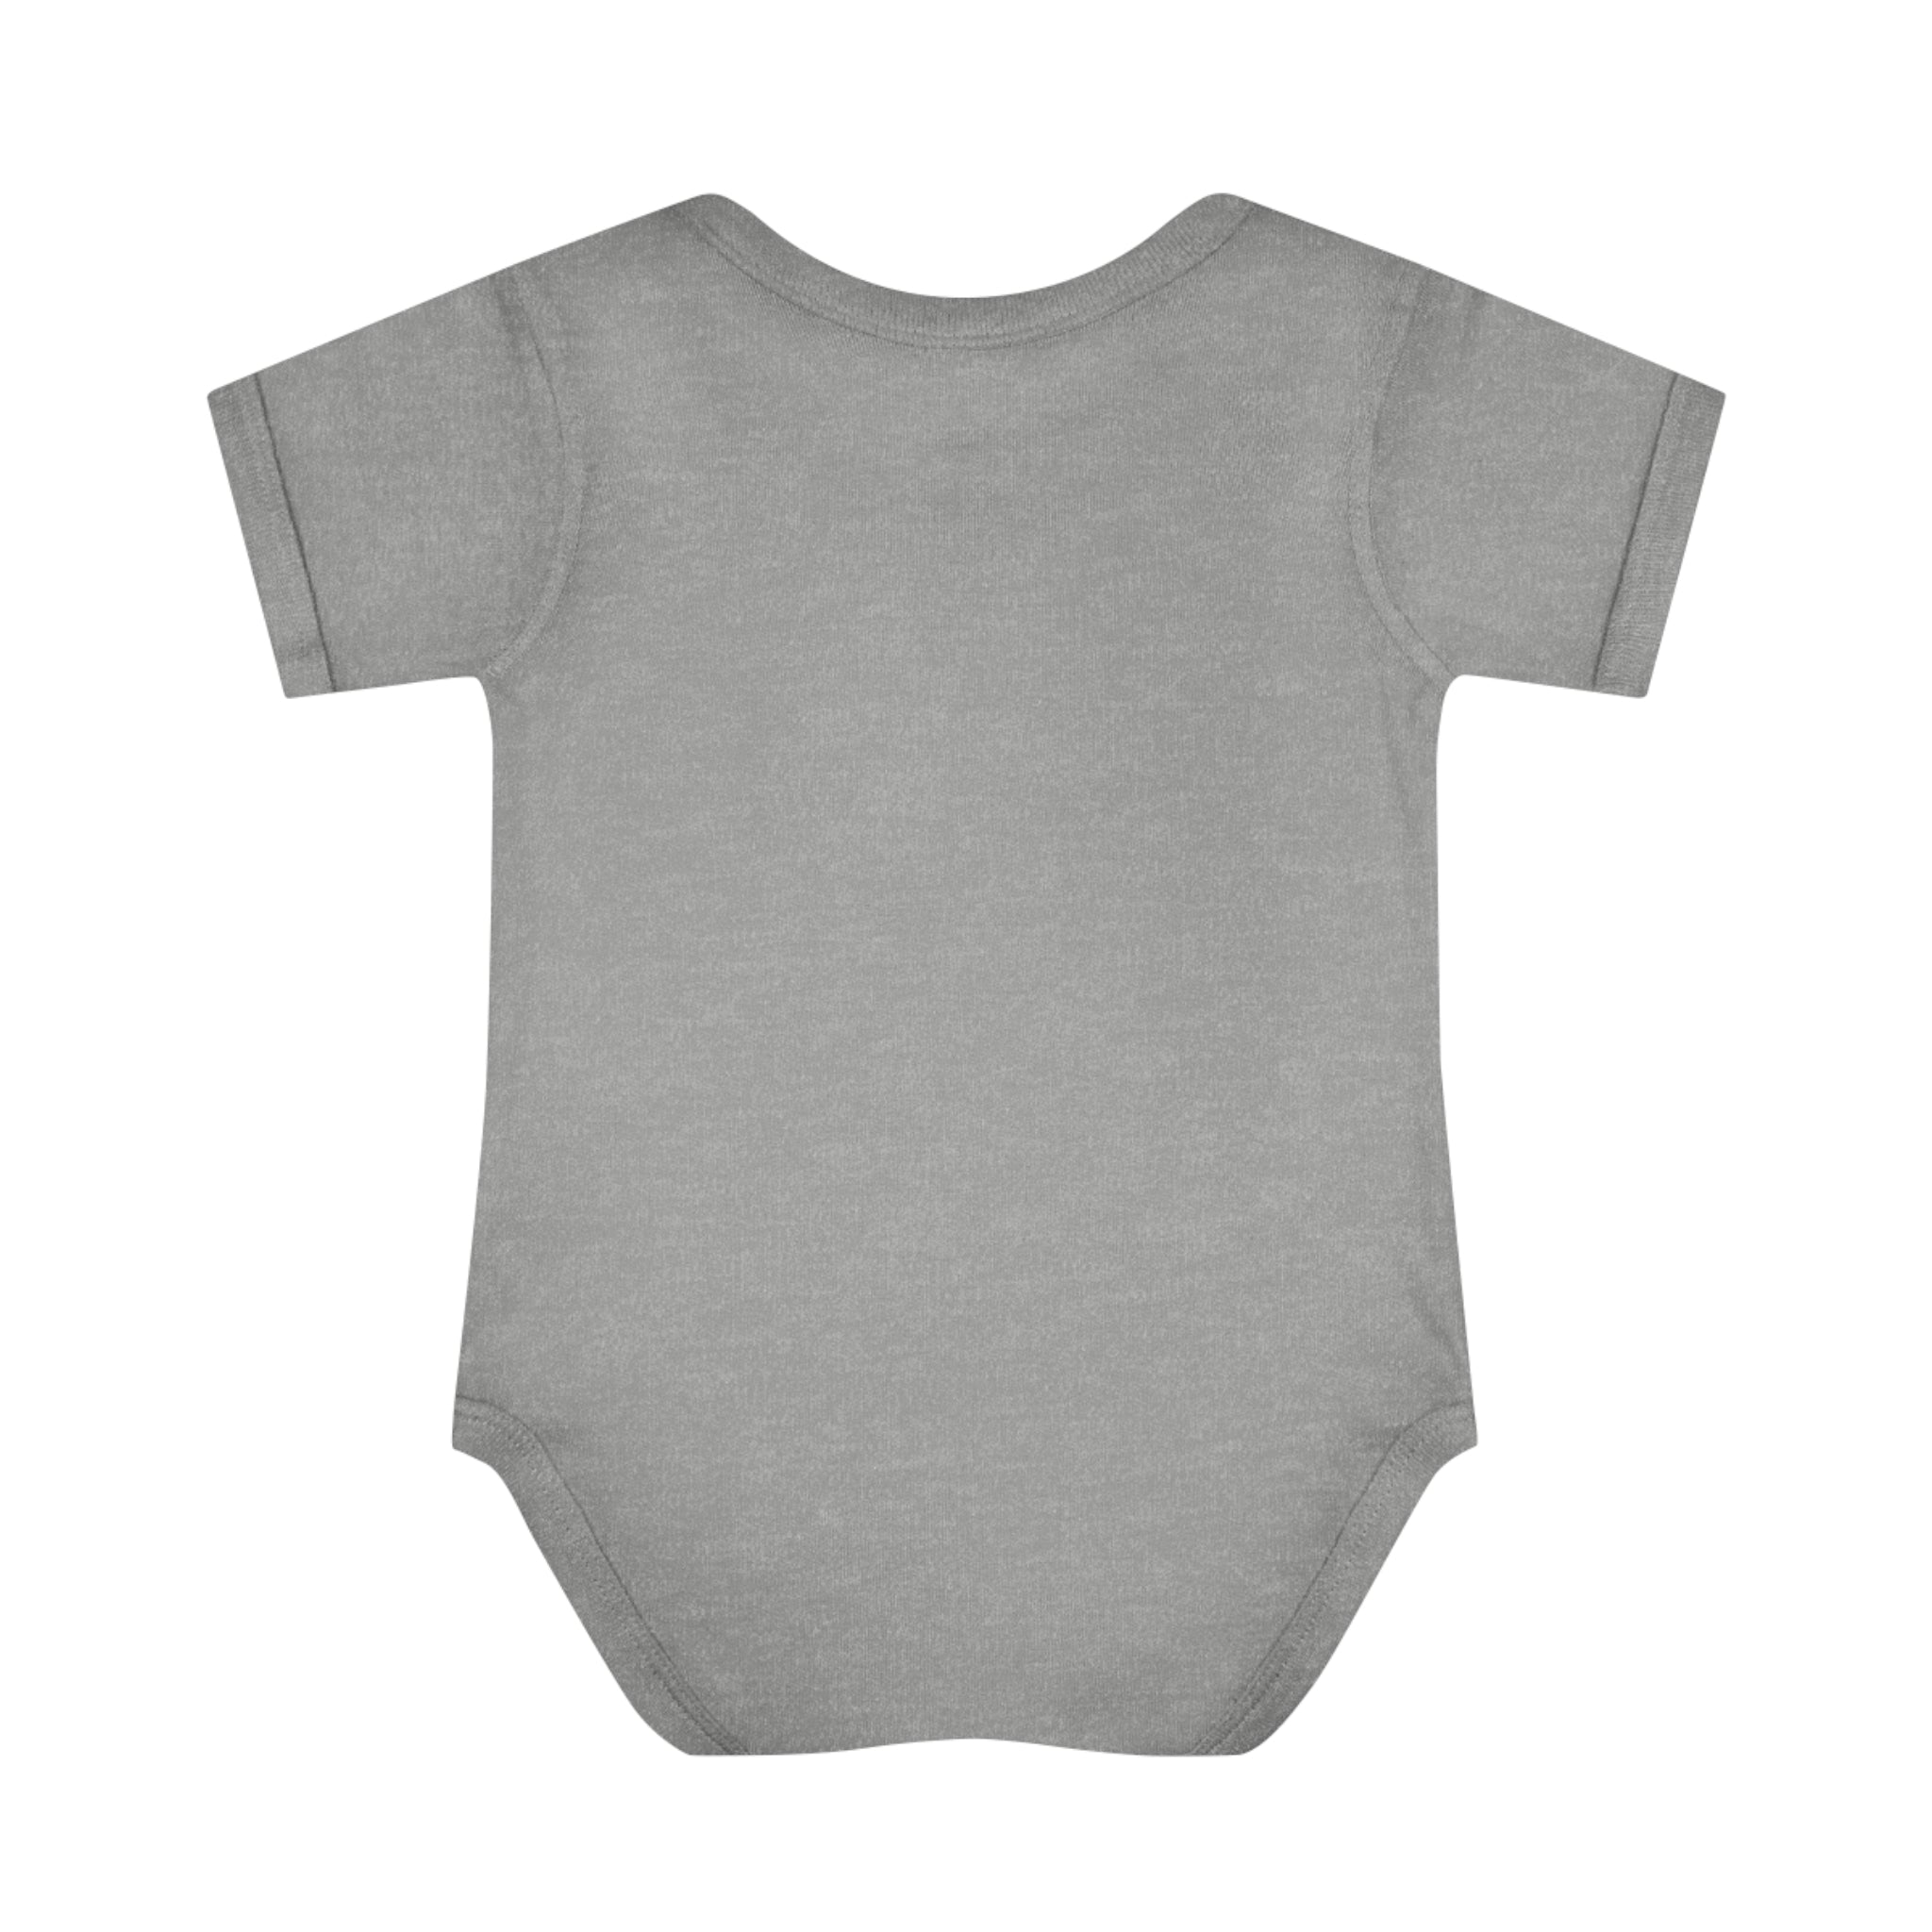 Husky Infant Baby Rib Bodysuit